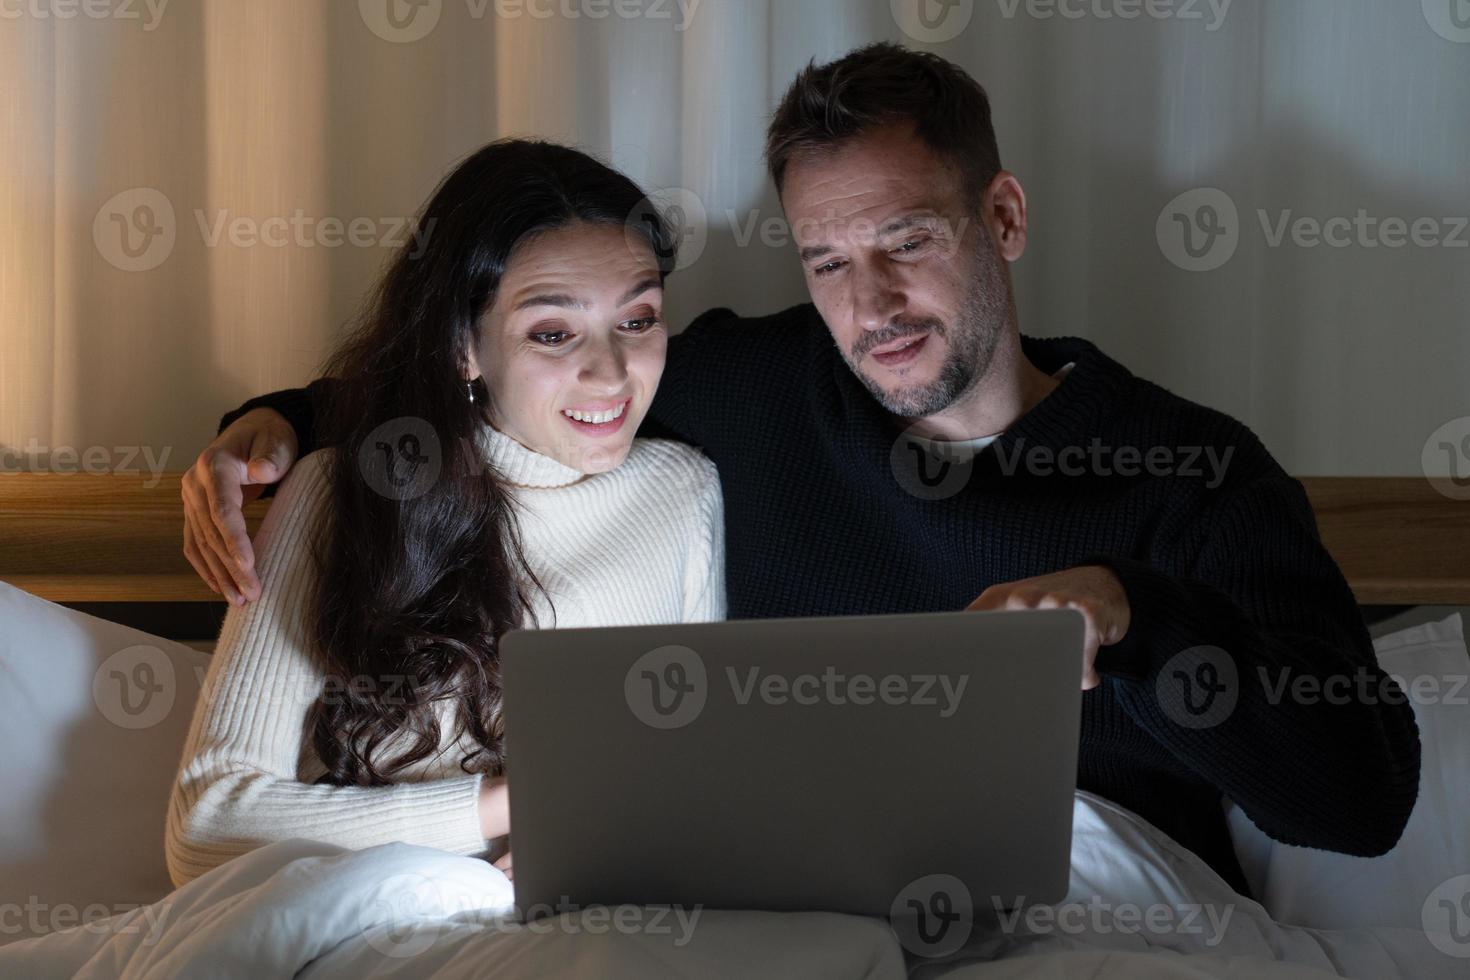 coppia cuacasian che guarda film dal programma streming nel computer insieme sul letto di casa la notte foto